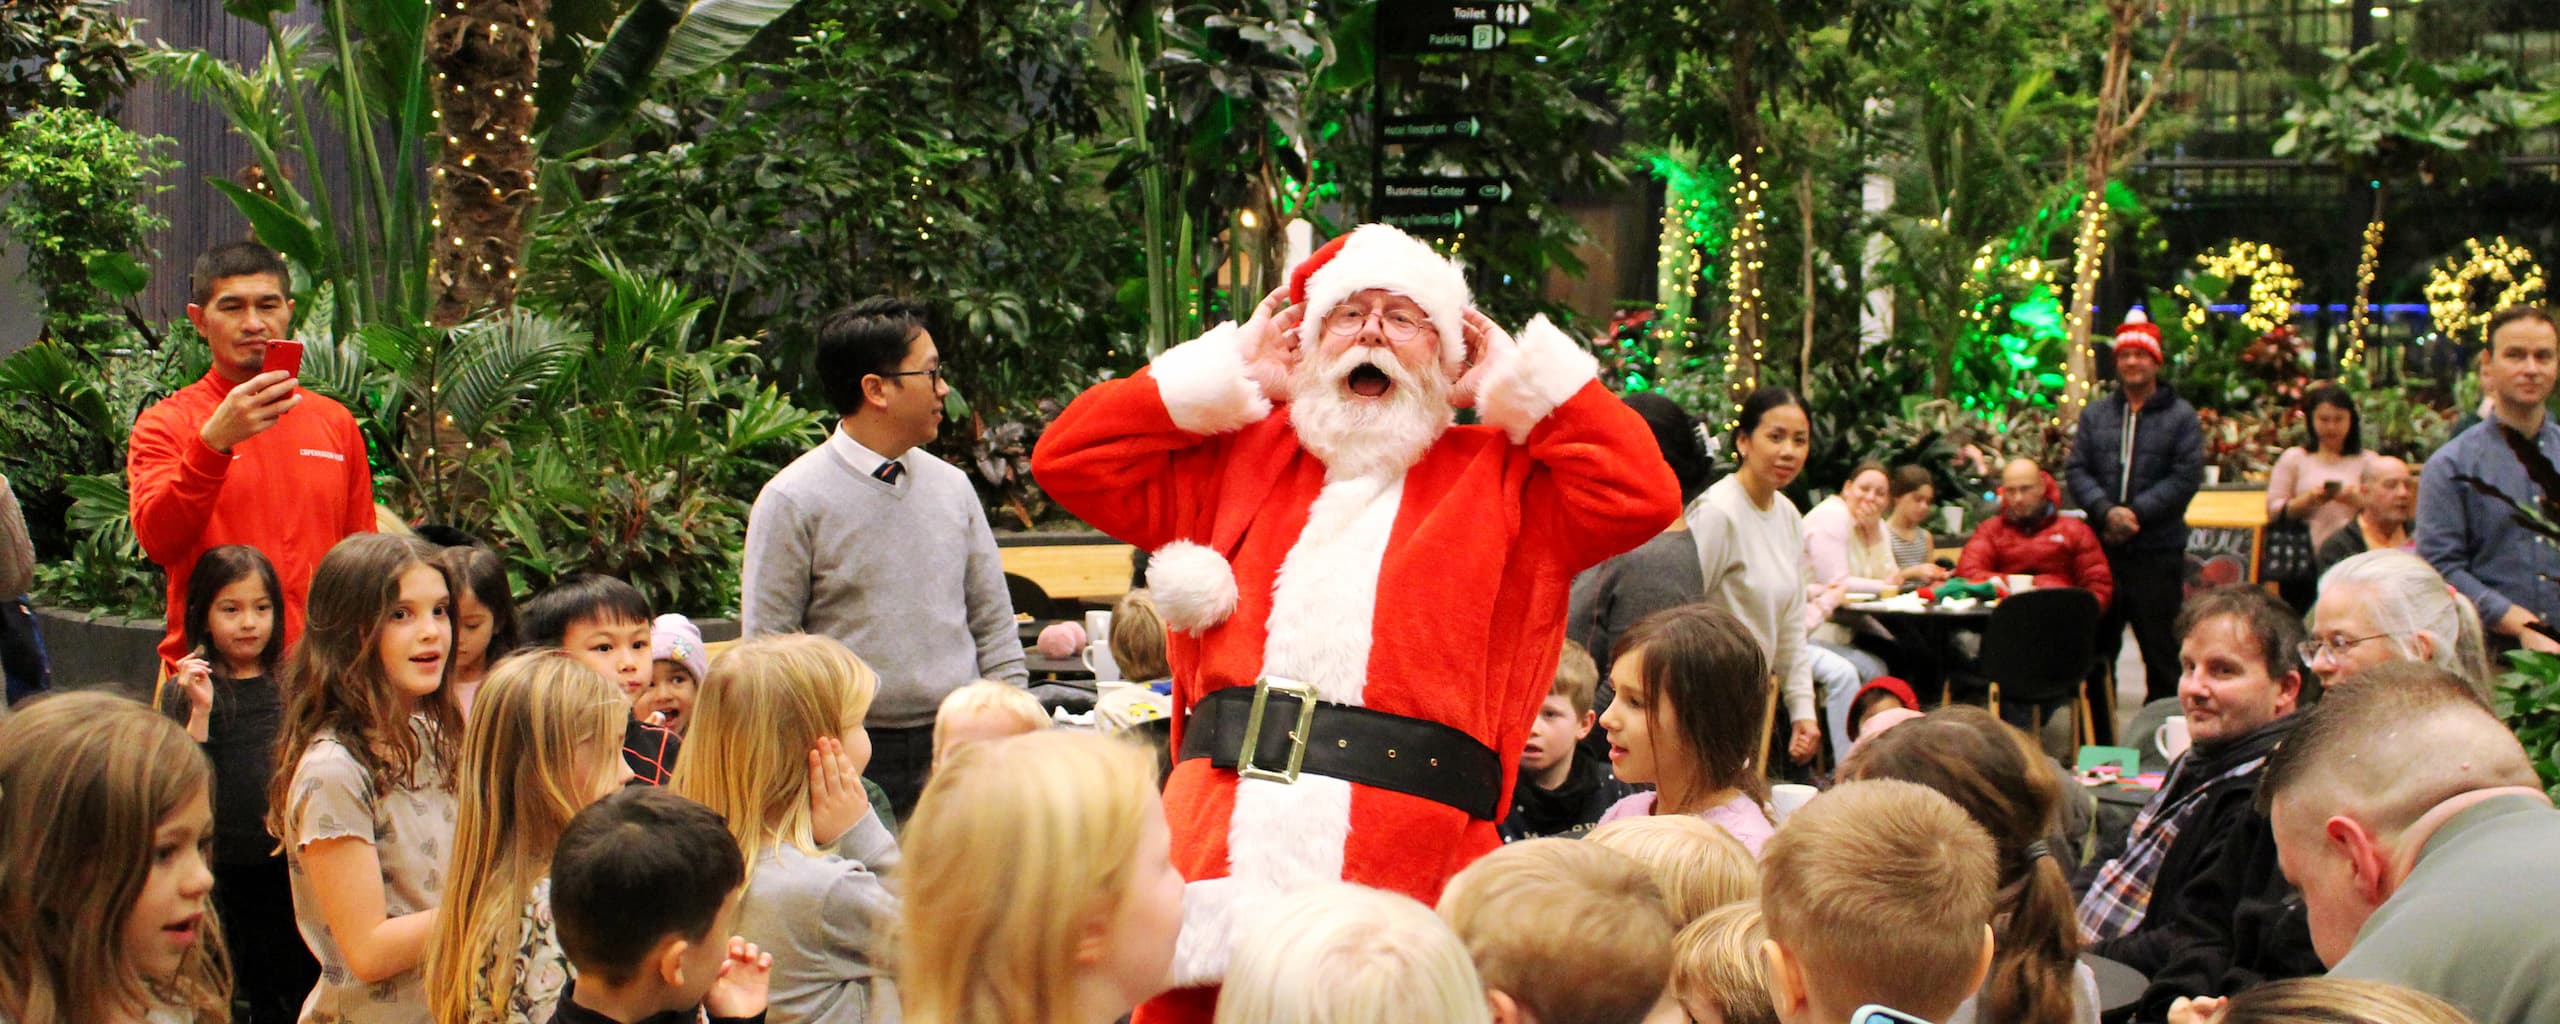 Julemanden kom på besøg under Ørestads julearrangementer, her til Grundejerforeningen Ørestad Arenakvarters arrangement i Crowne Plazas foyer.